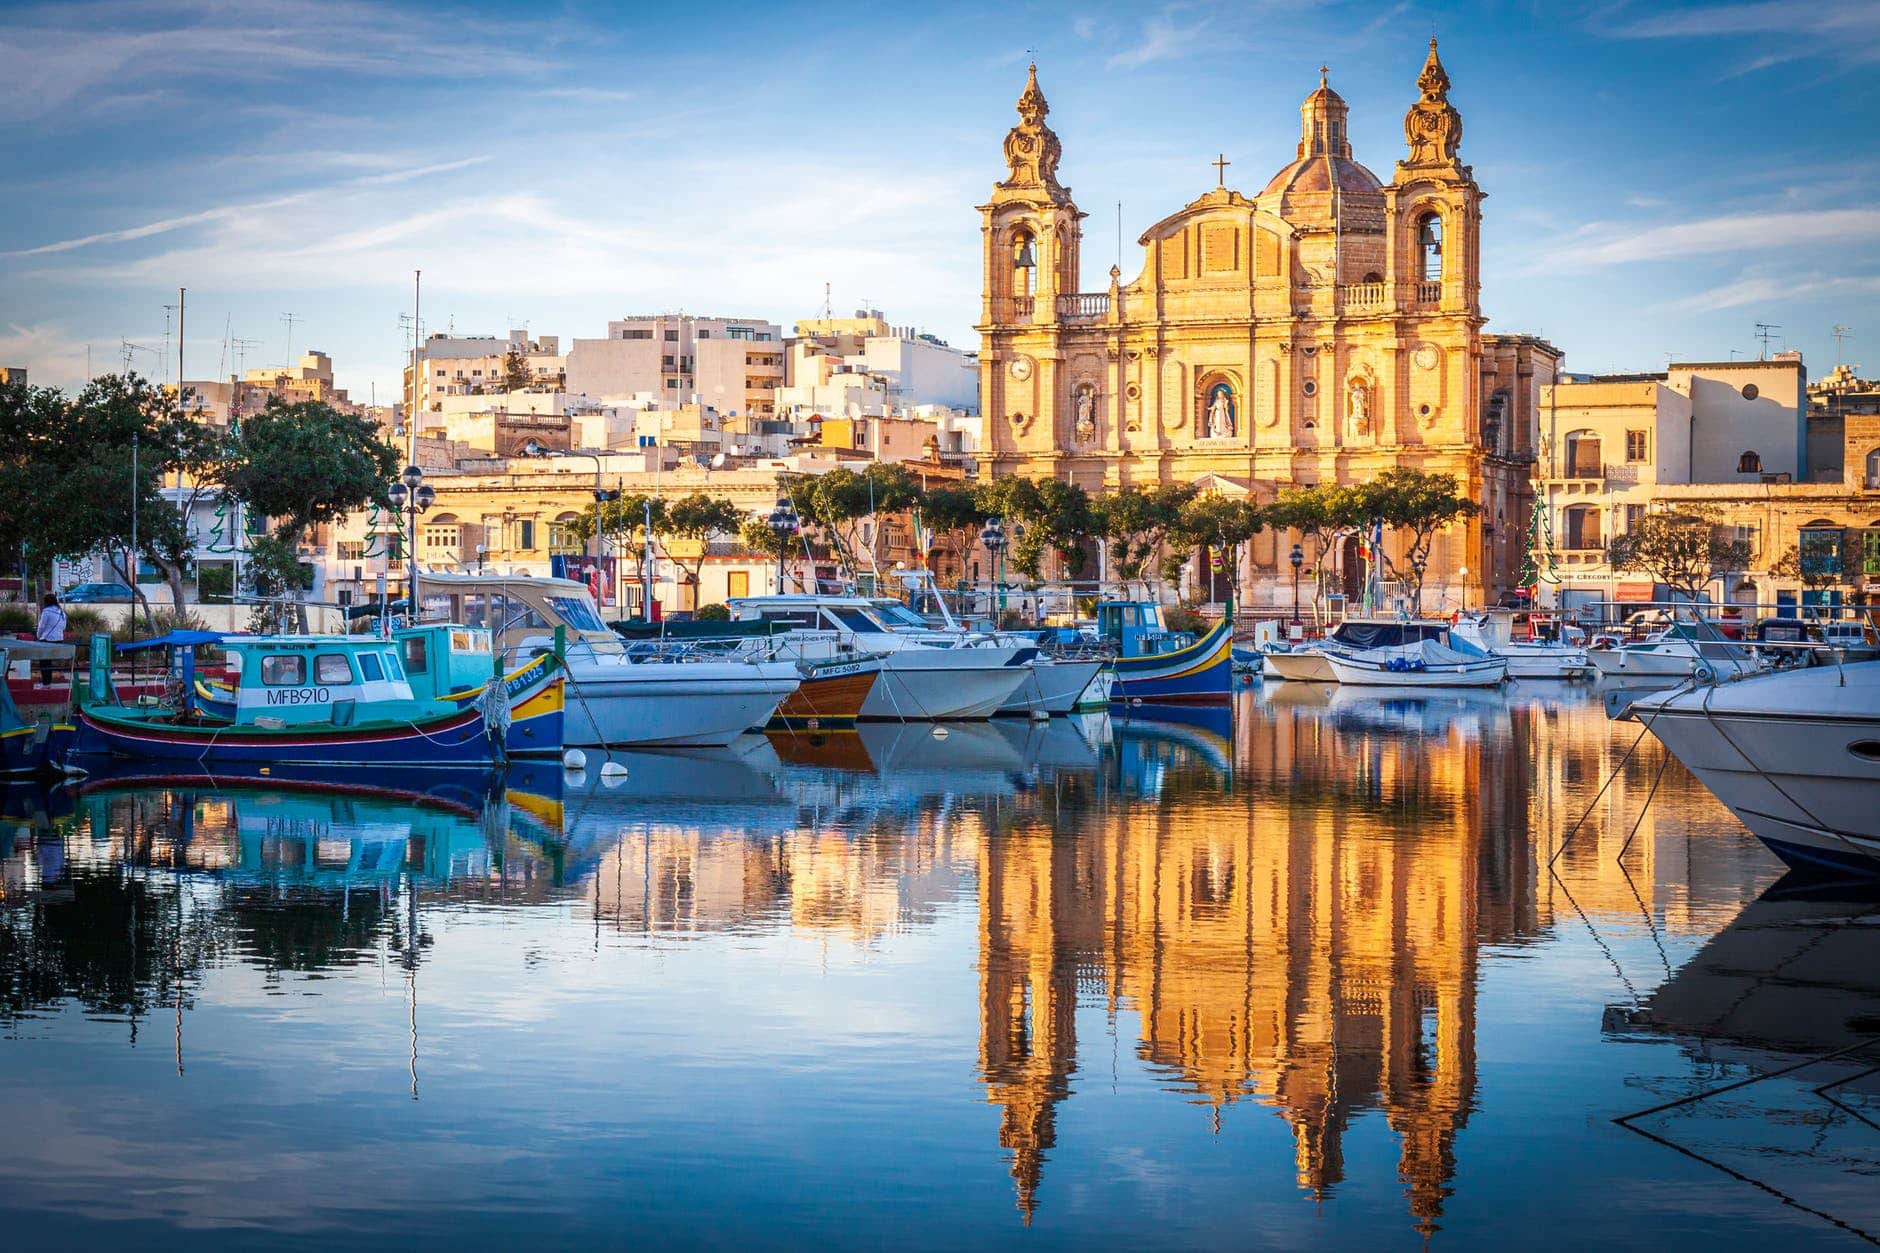 Prächtige Kirchen und Sandstein: Architektonisch ist Malta ein Hochgenuss.